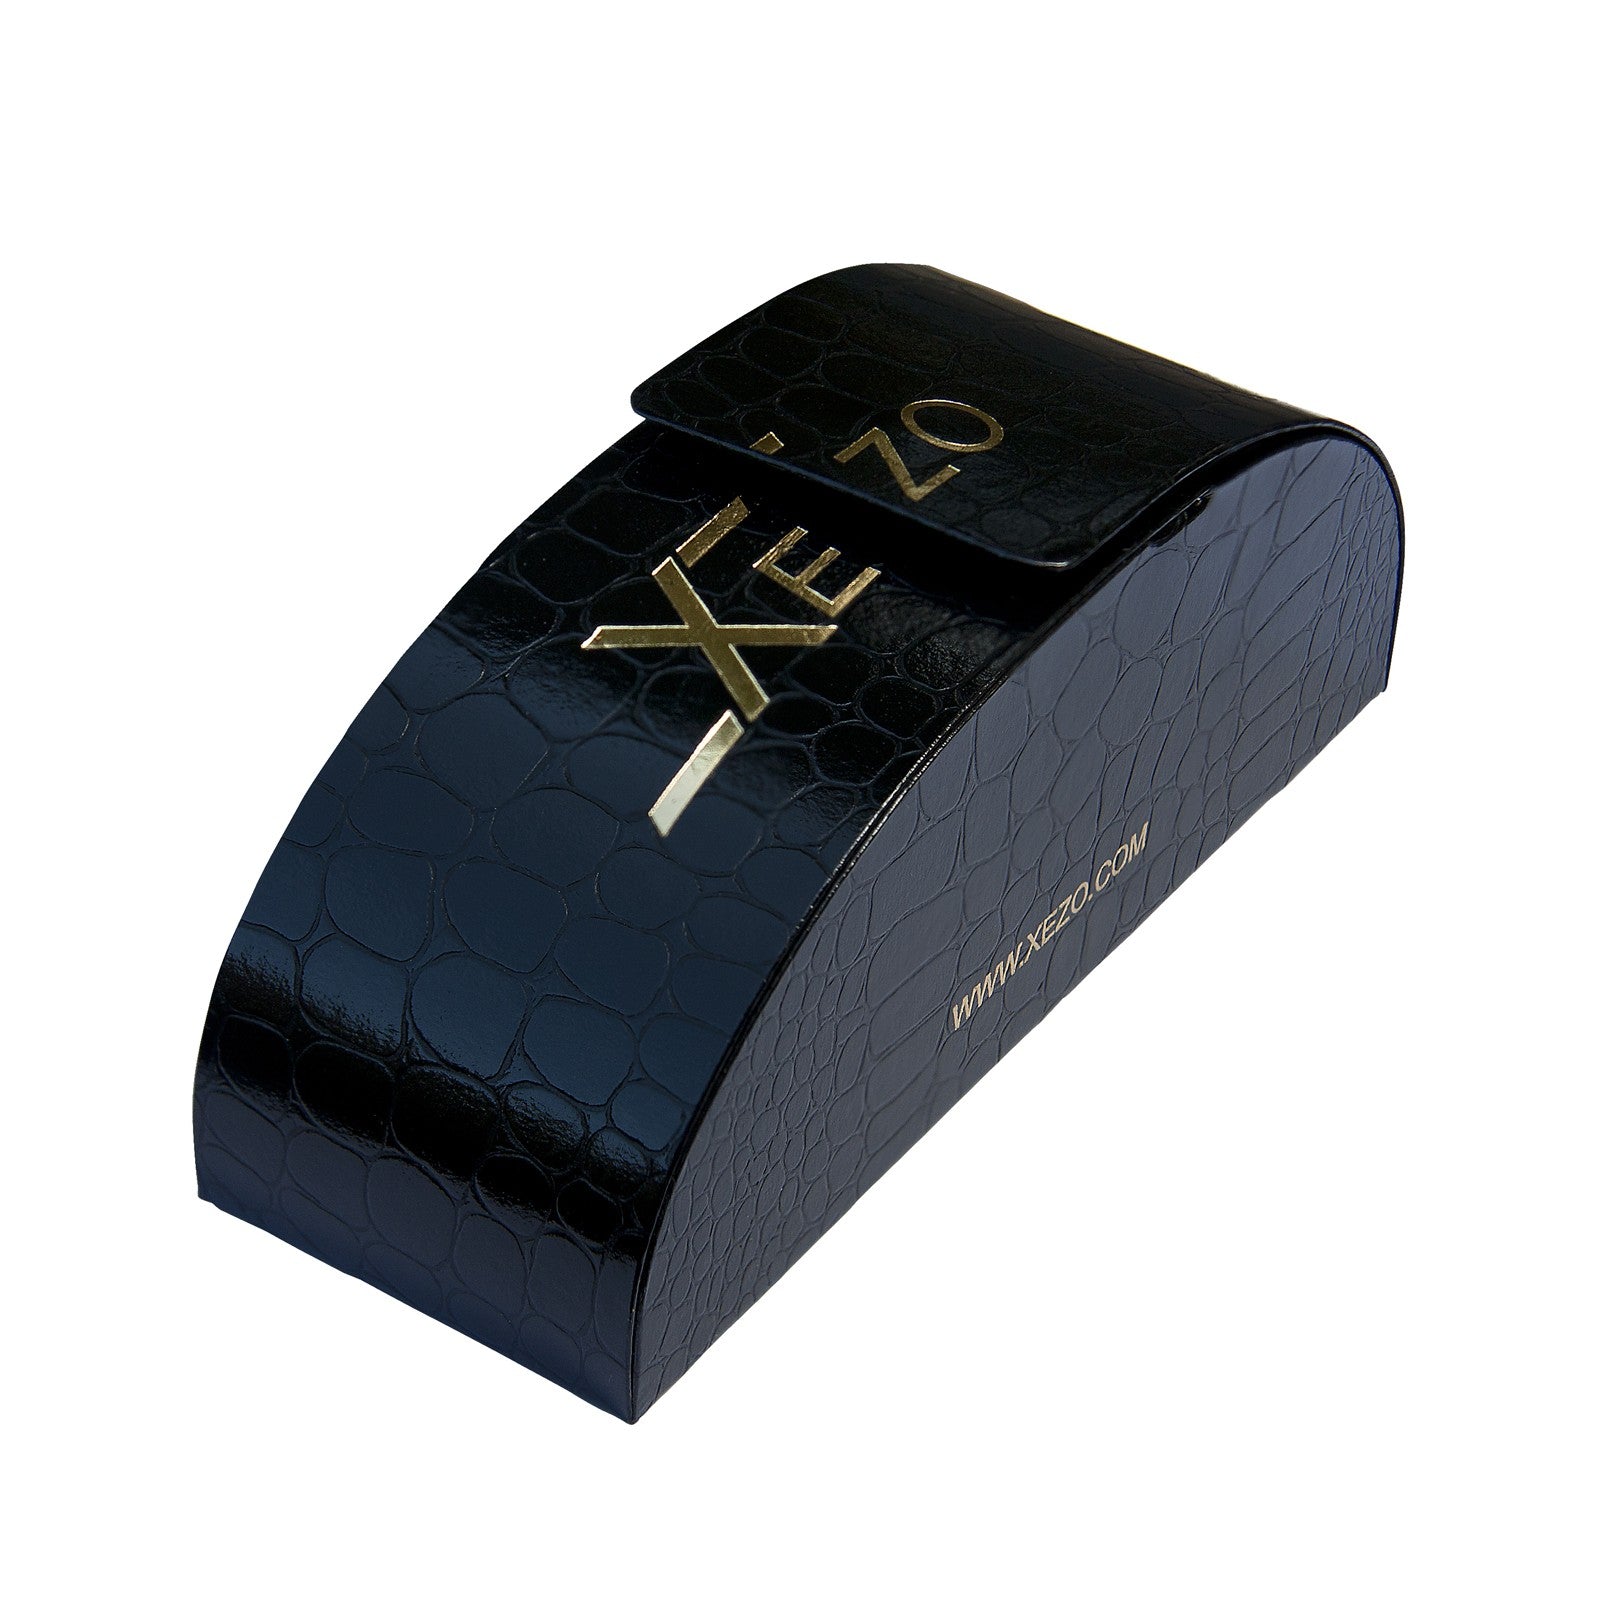 Xezo - Black gift box of the Incognito 1400 GR sunglasses